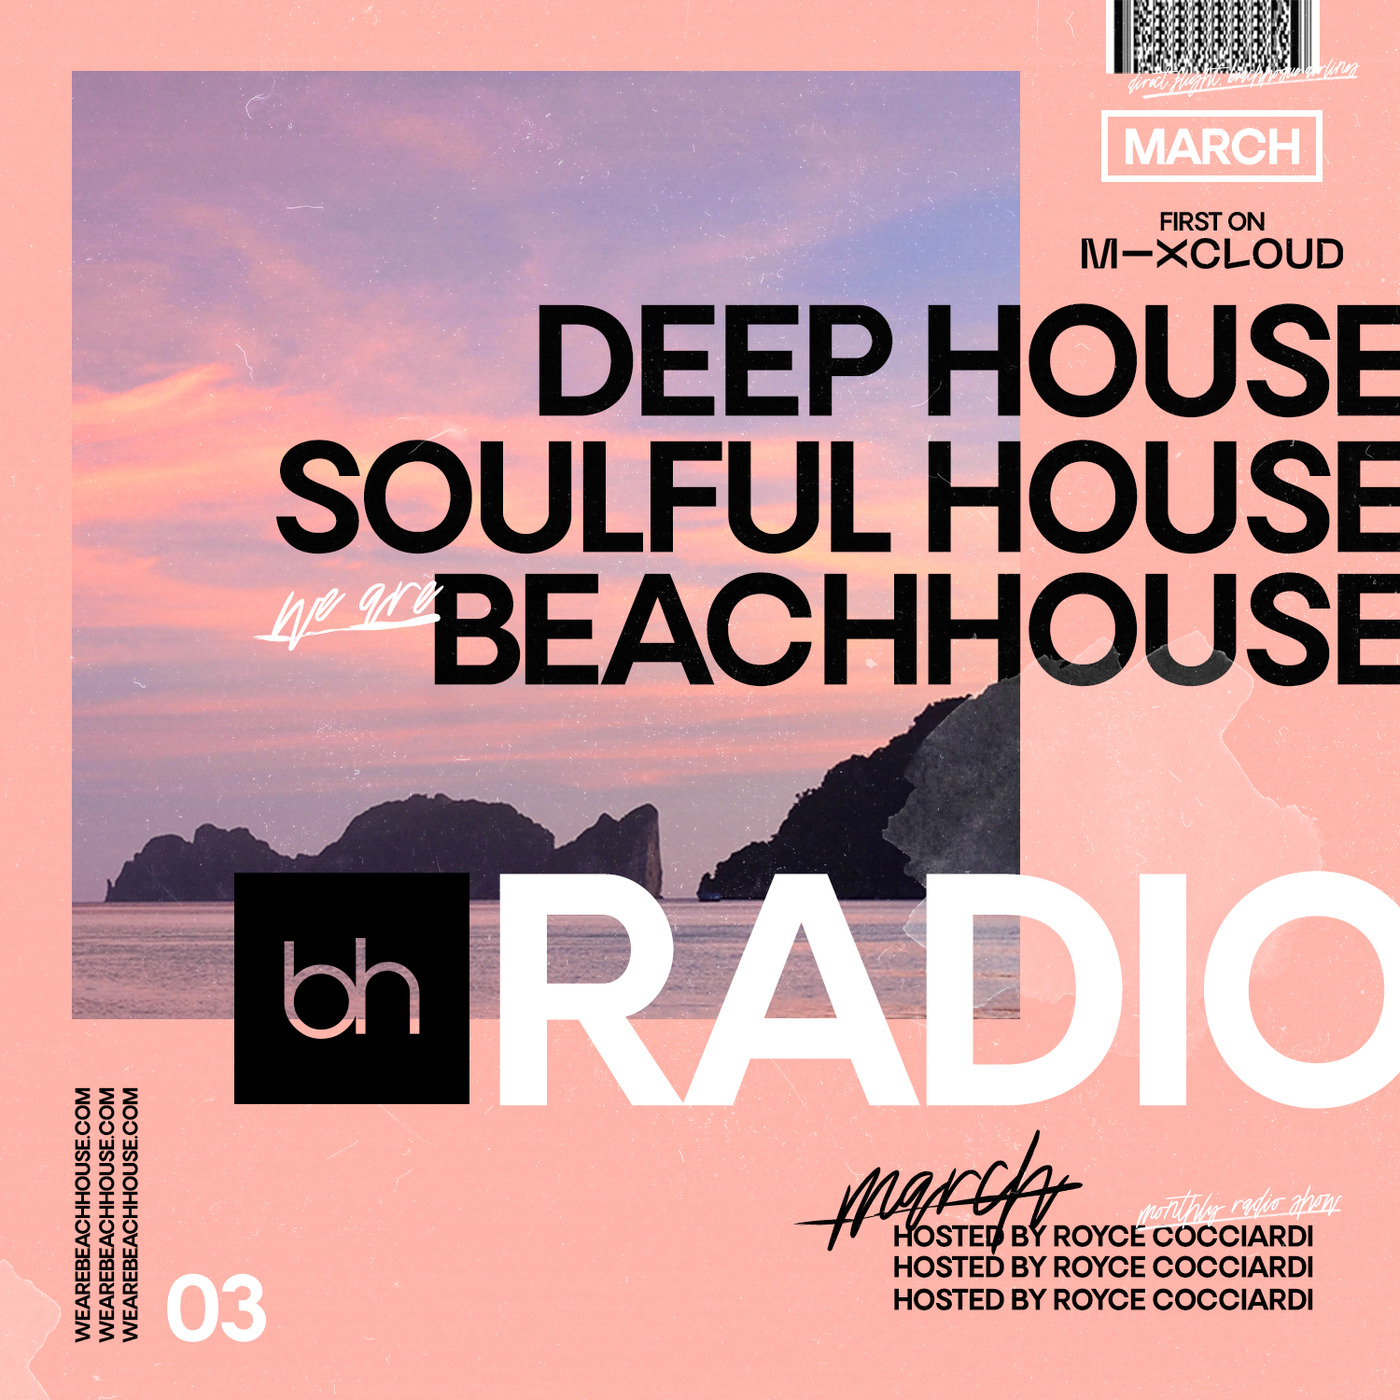 Beachhouse RADIO - March 2020 - Episode 03